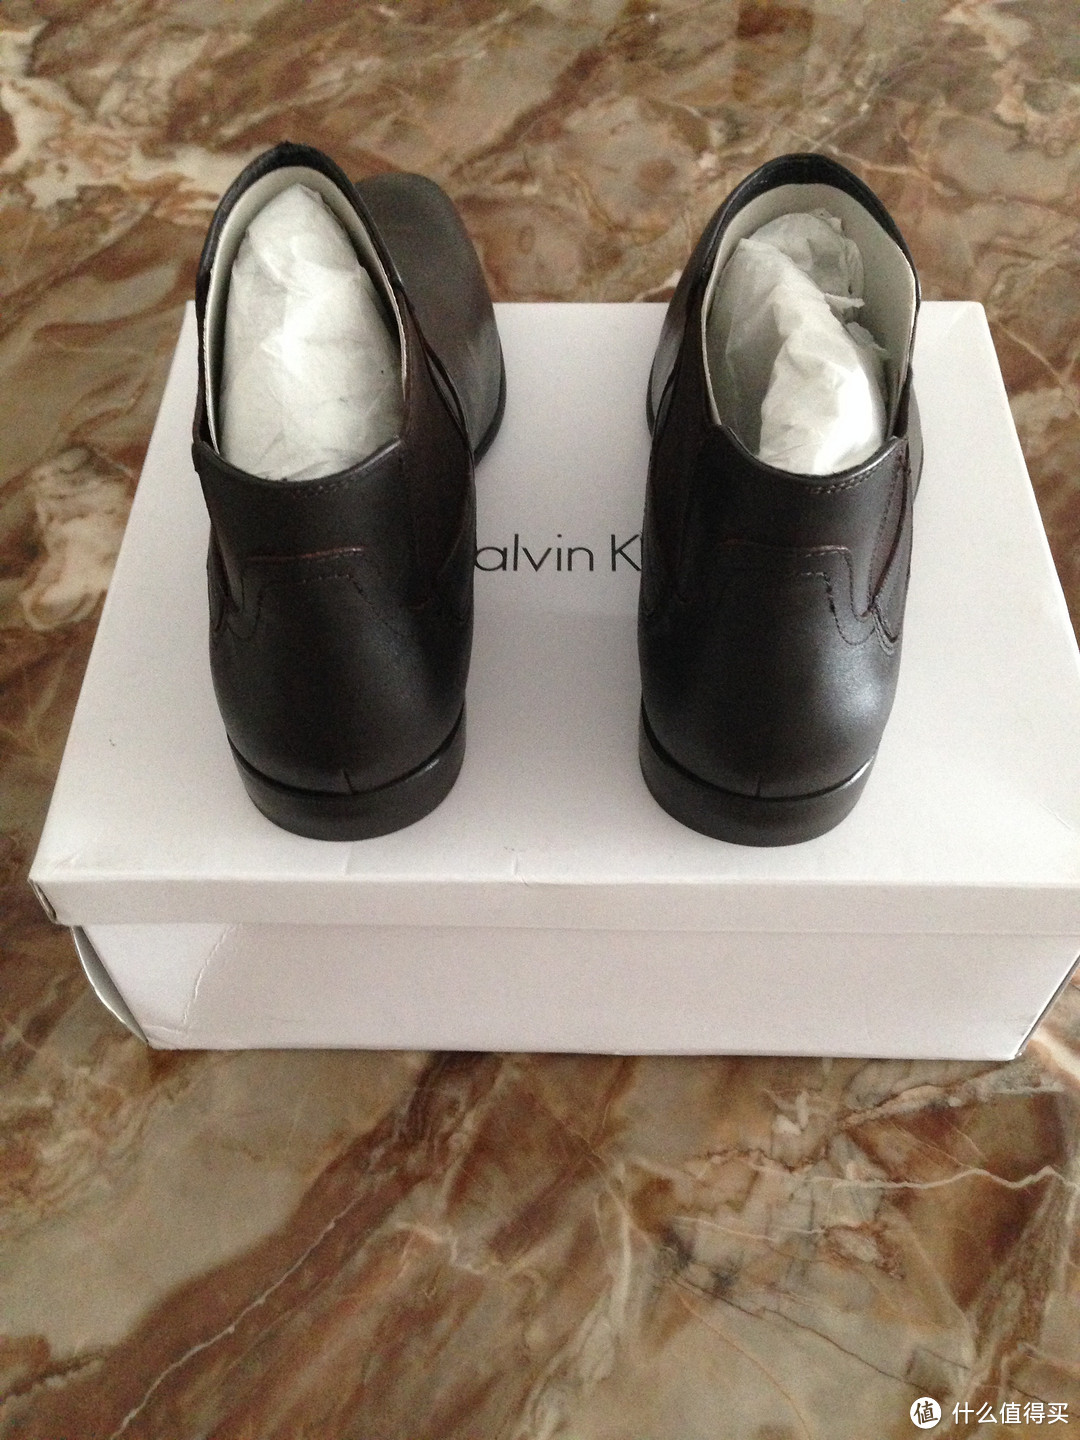 #原创新人#Calvin Klein Clarke 男士短靴 开箱晒物